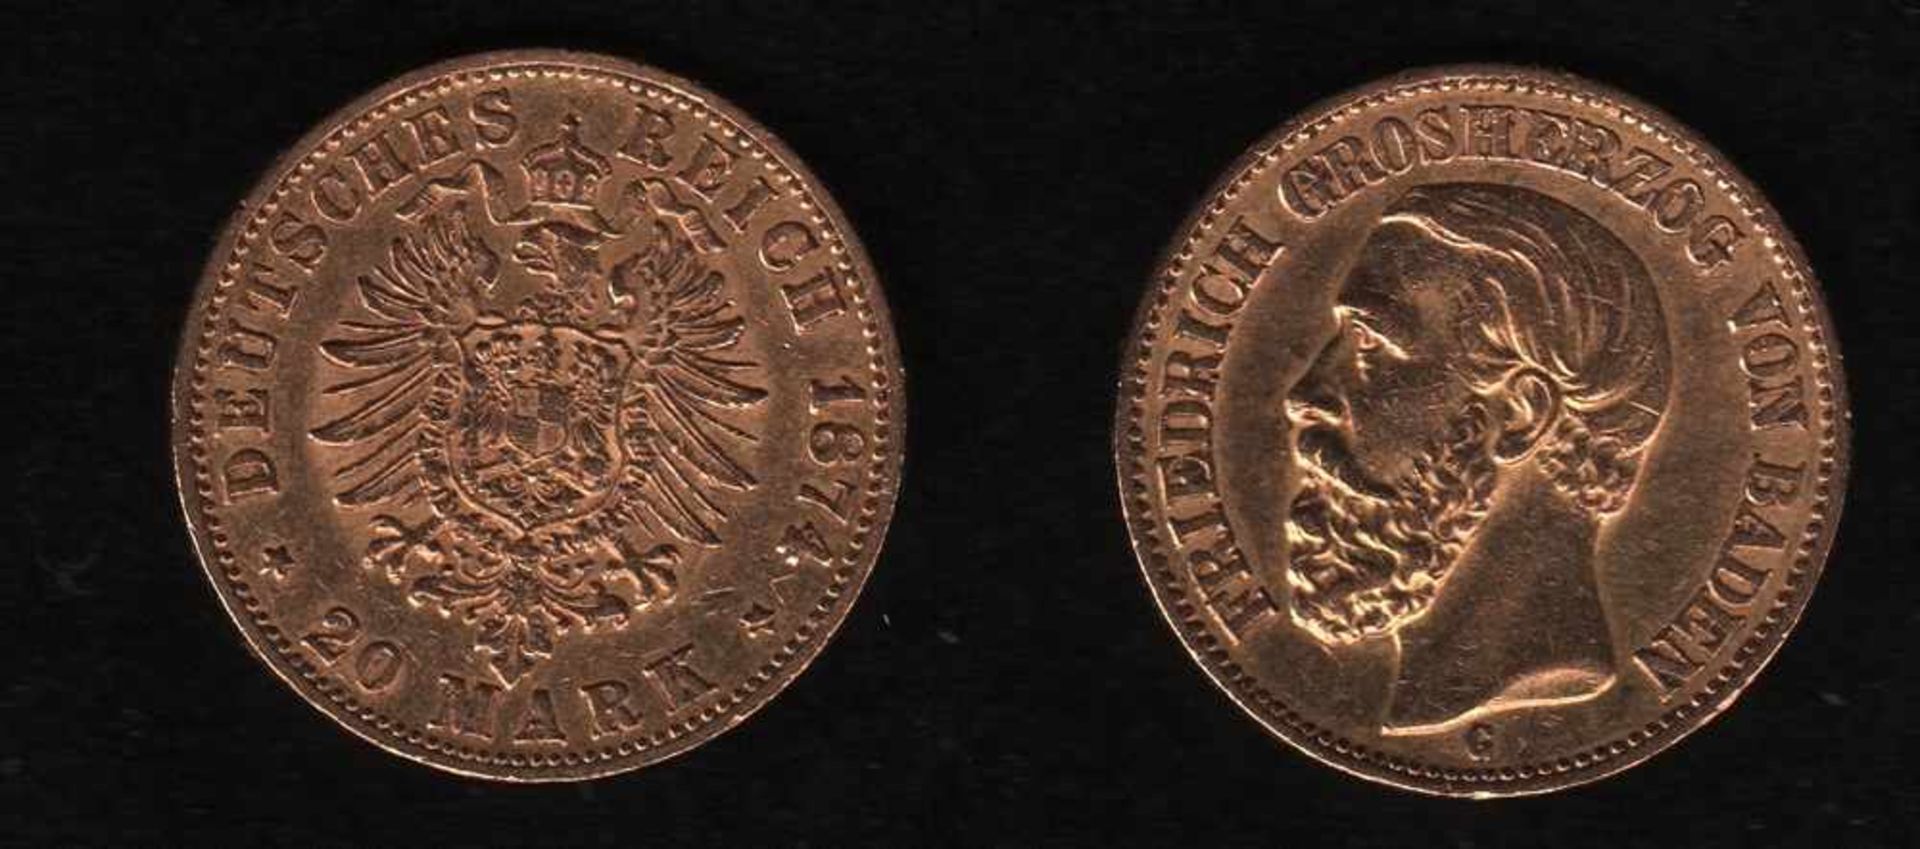 Deutsches Reich. Goldmünze.20 Mark. Friedrich I., Großherzog von Baden. G 1874. Vorderseite: Porträt